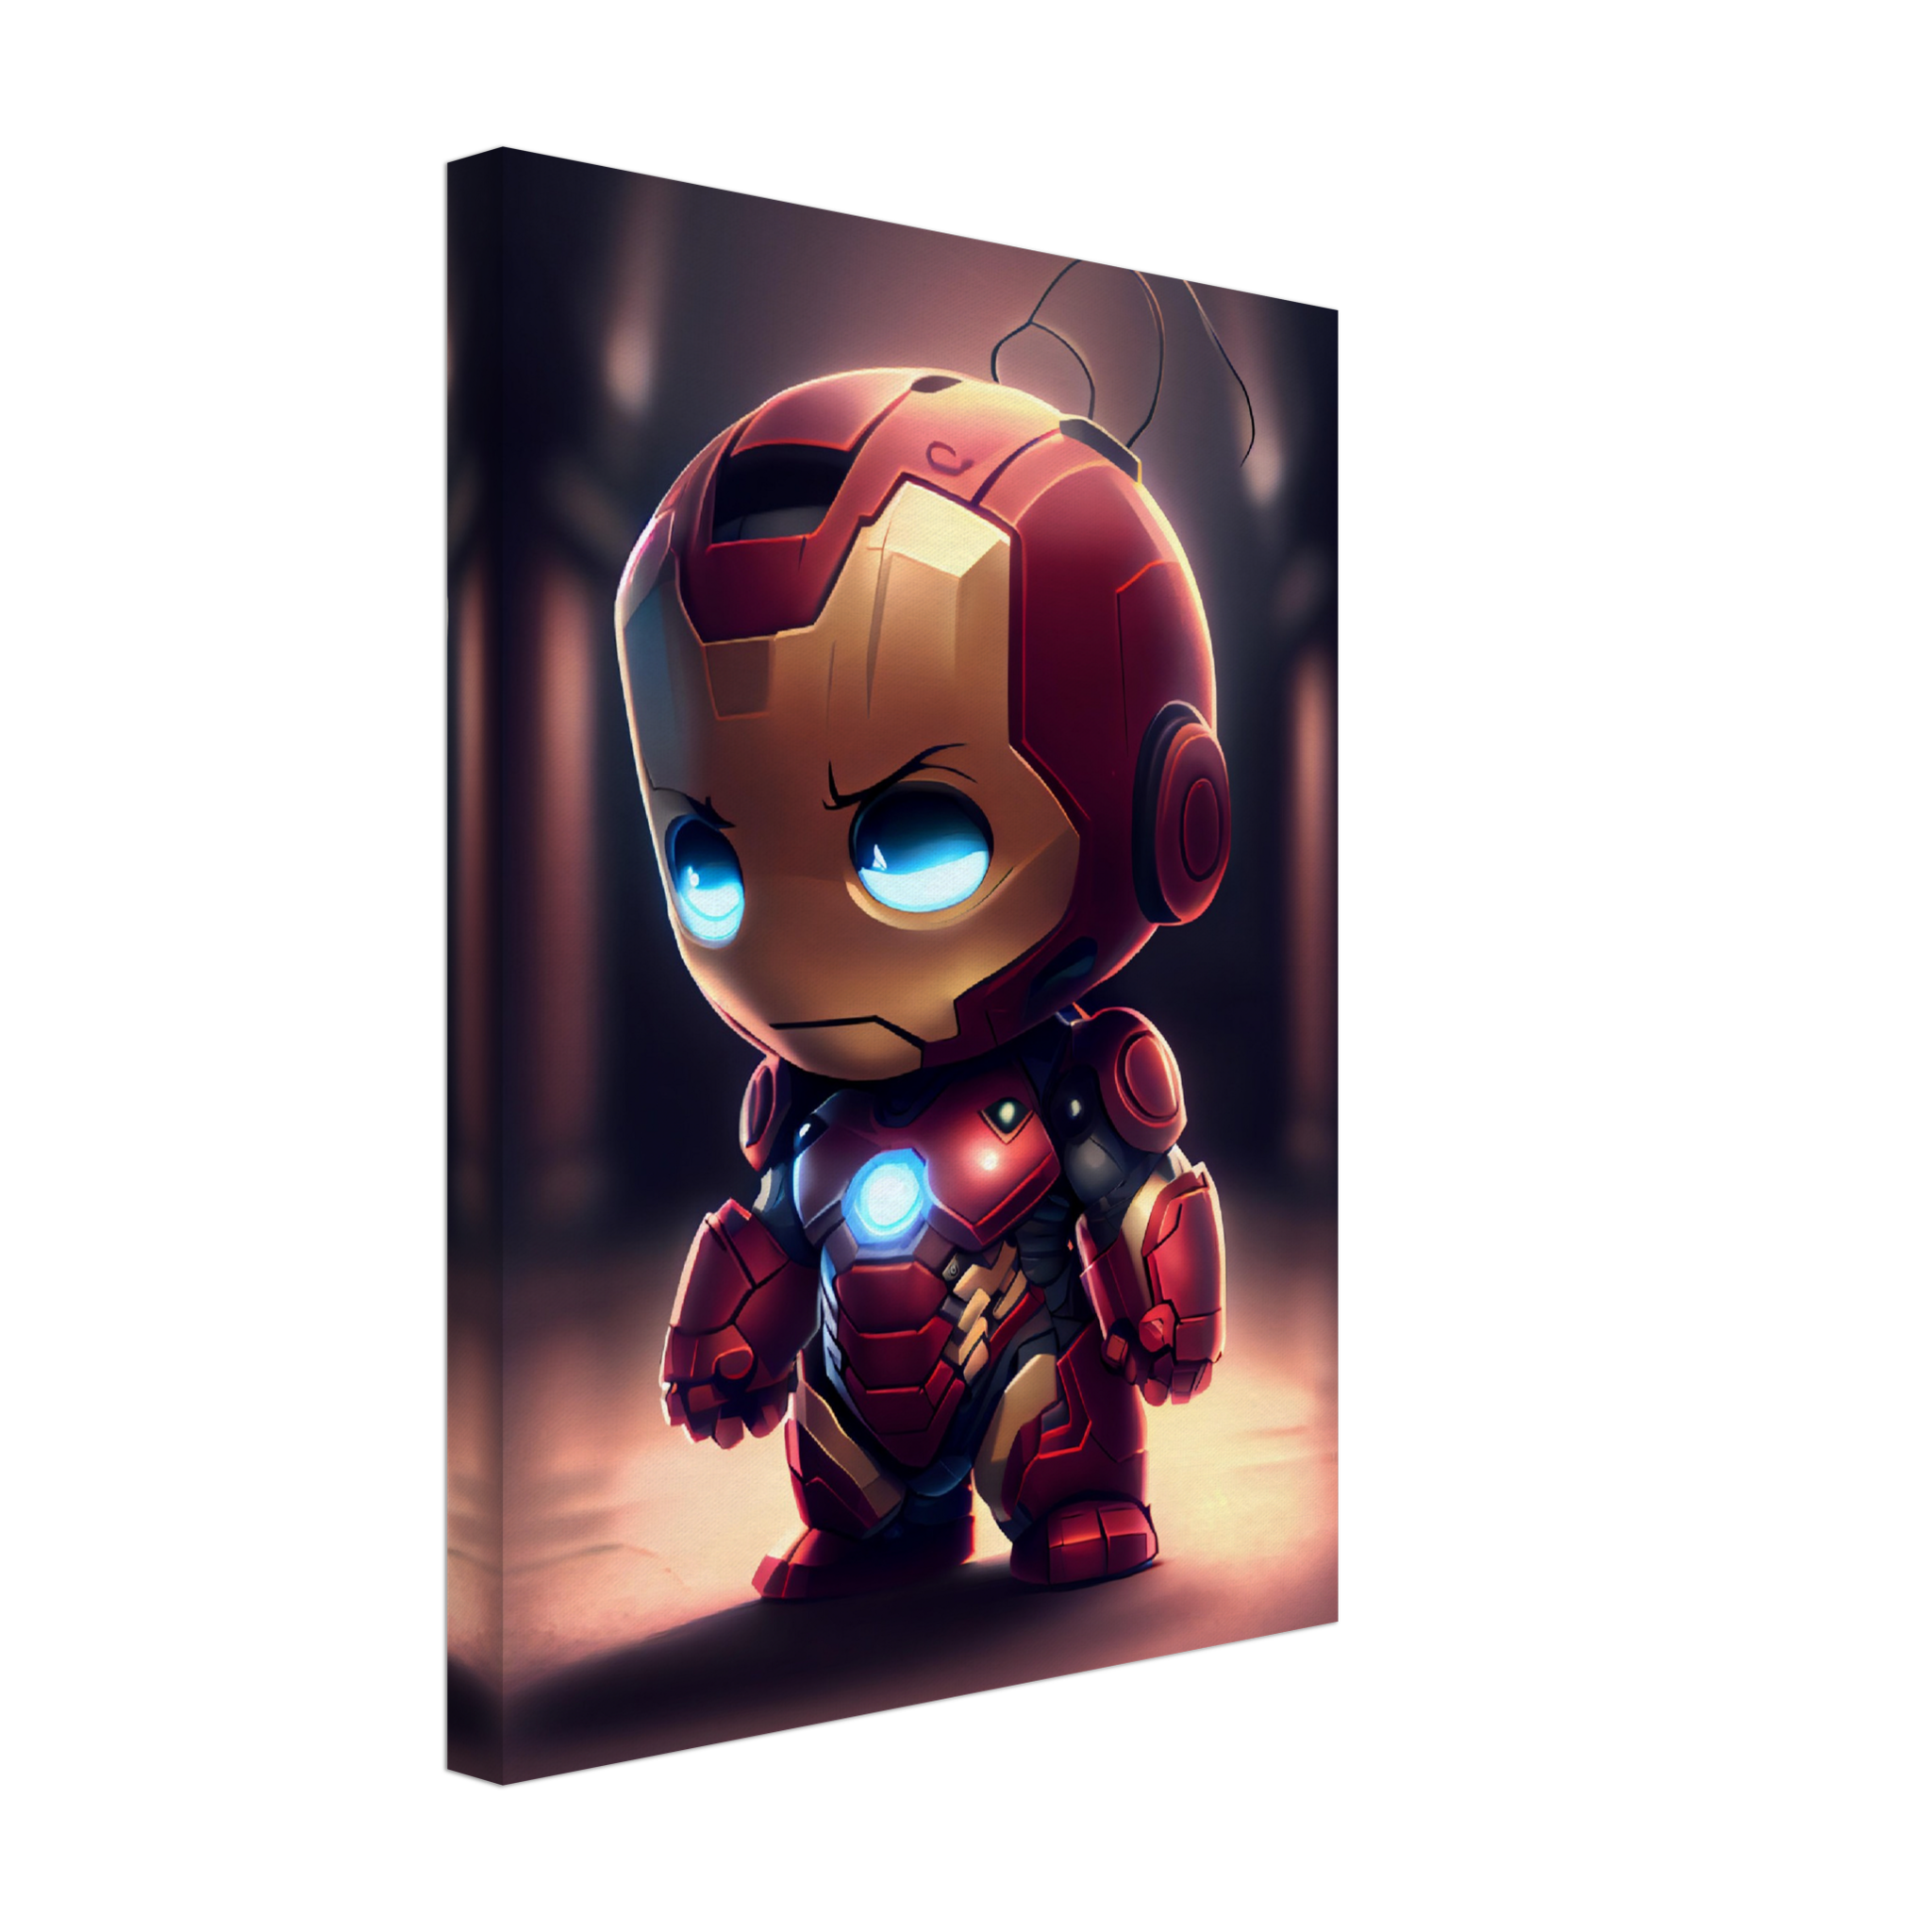 150 Hình Ảnh Người Sắt Iron Man Đẹp Nhất Cho Fan Marvel